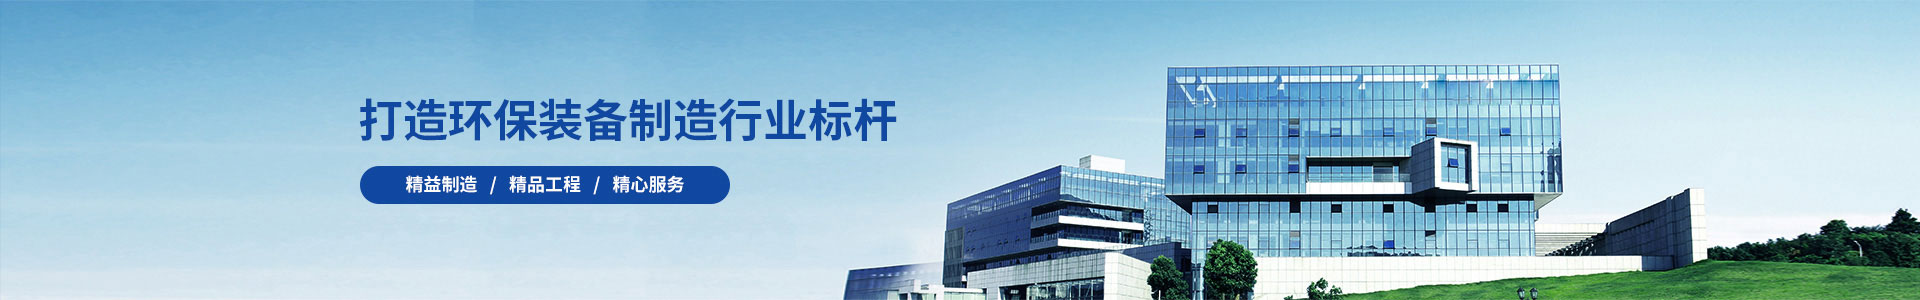 电气成套-广州锦如广告有限公司